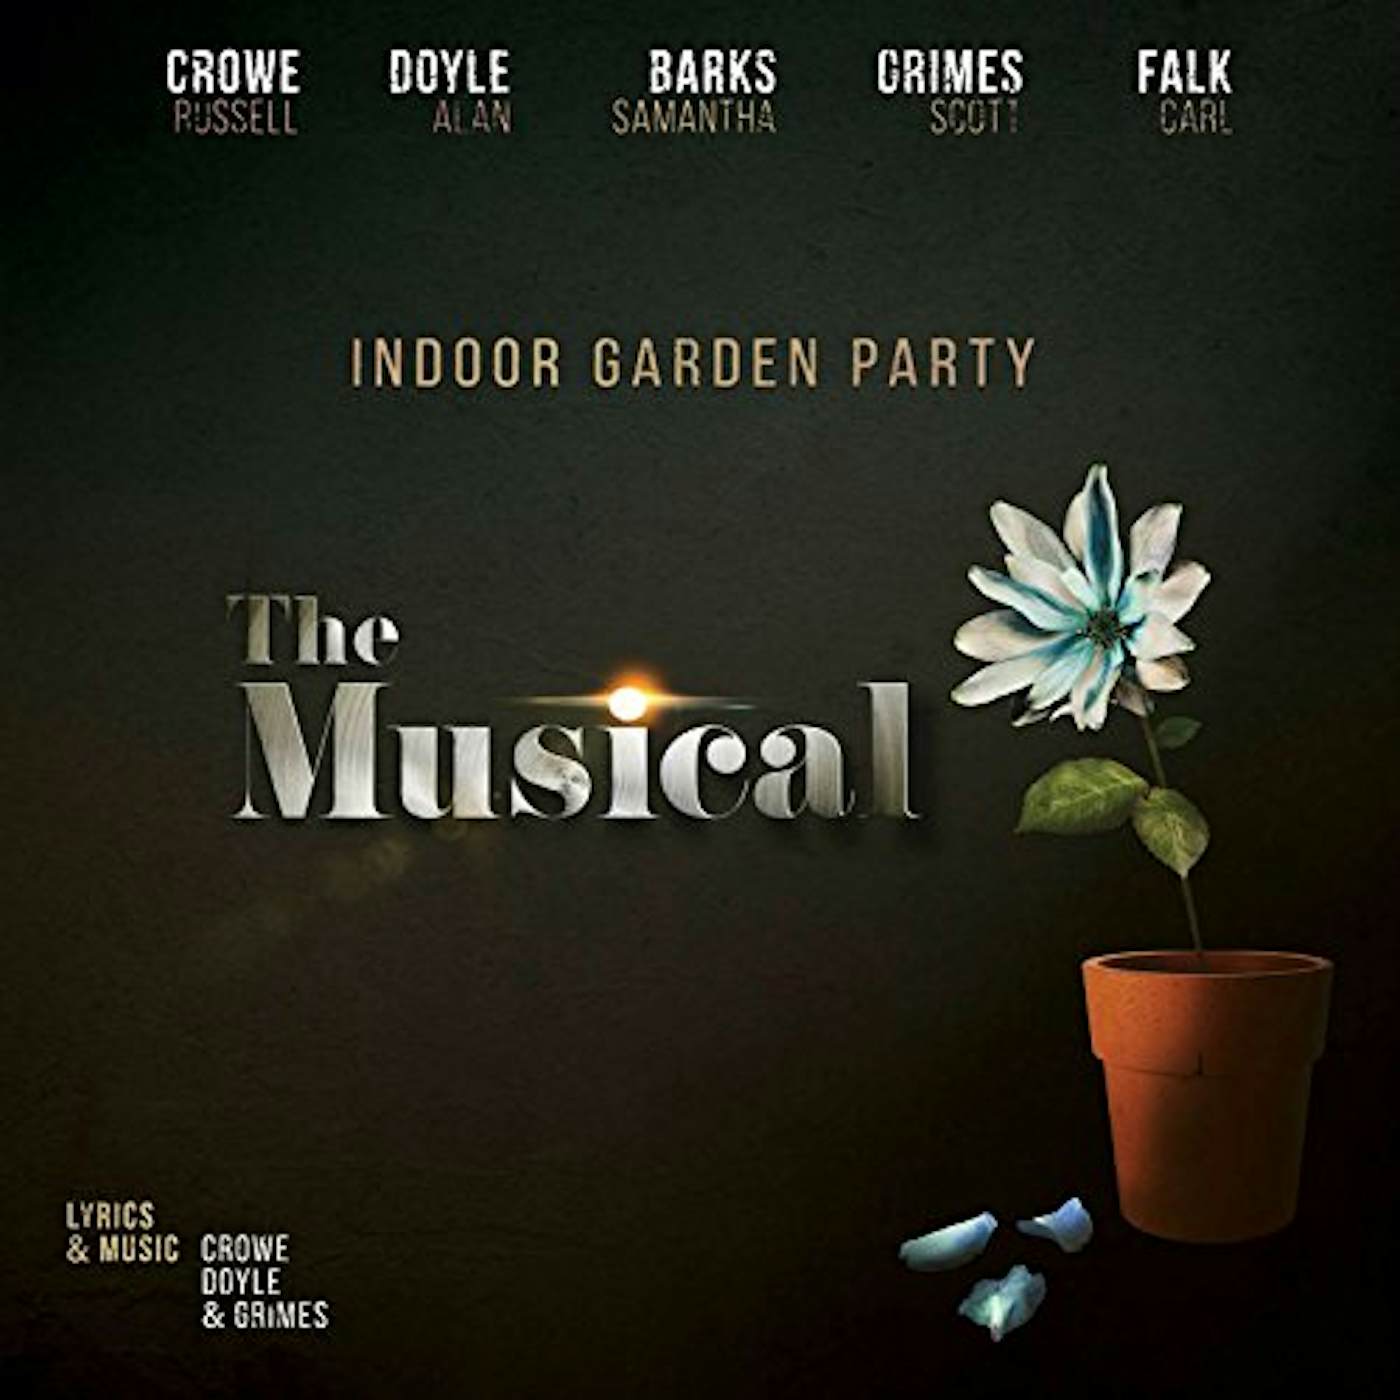 Indoor Garden Party MUSICAL CD